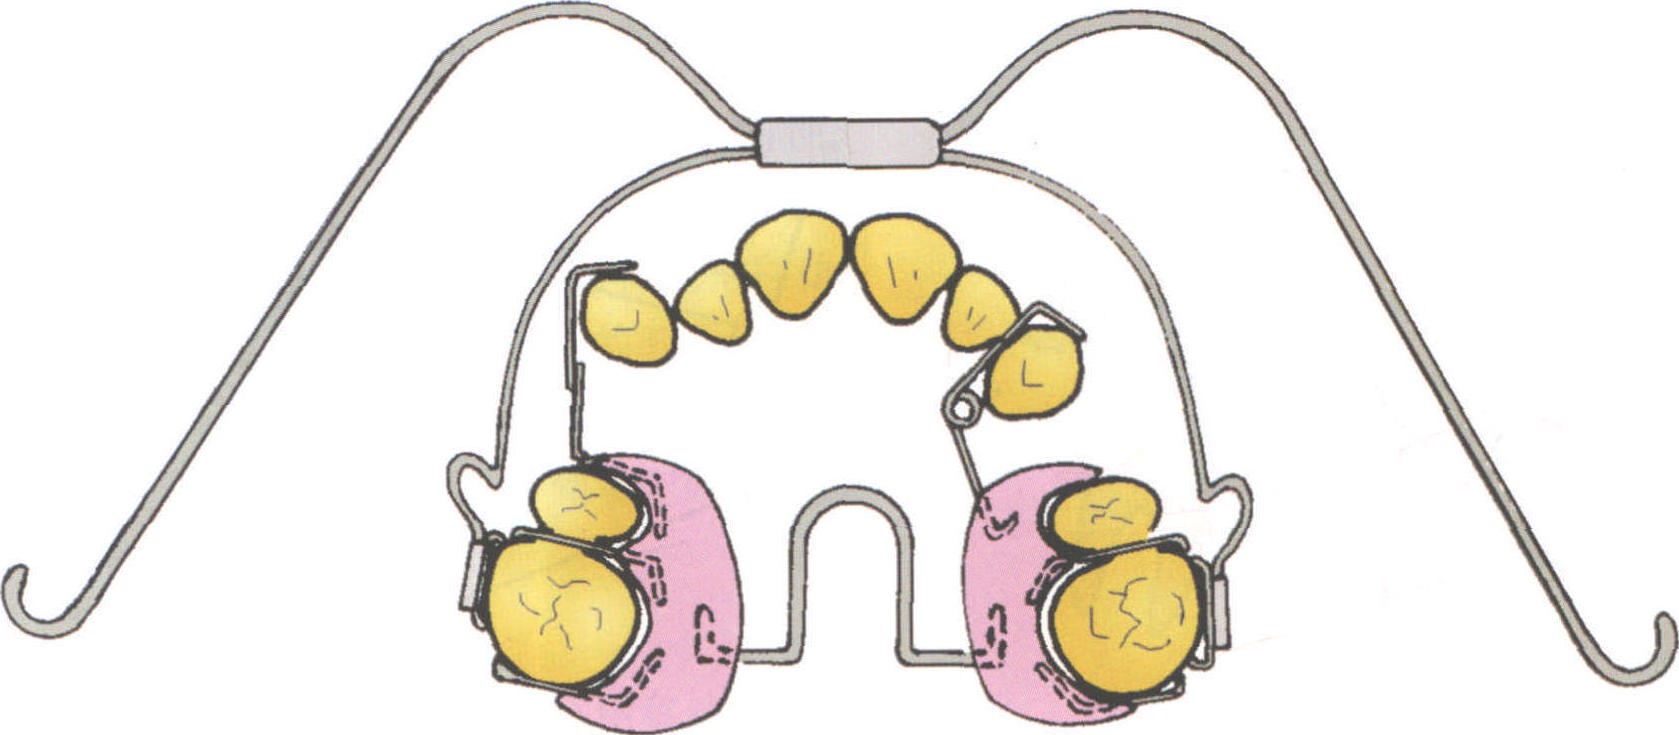 (二)用活动矫治器使上颌尖牙向远中移动